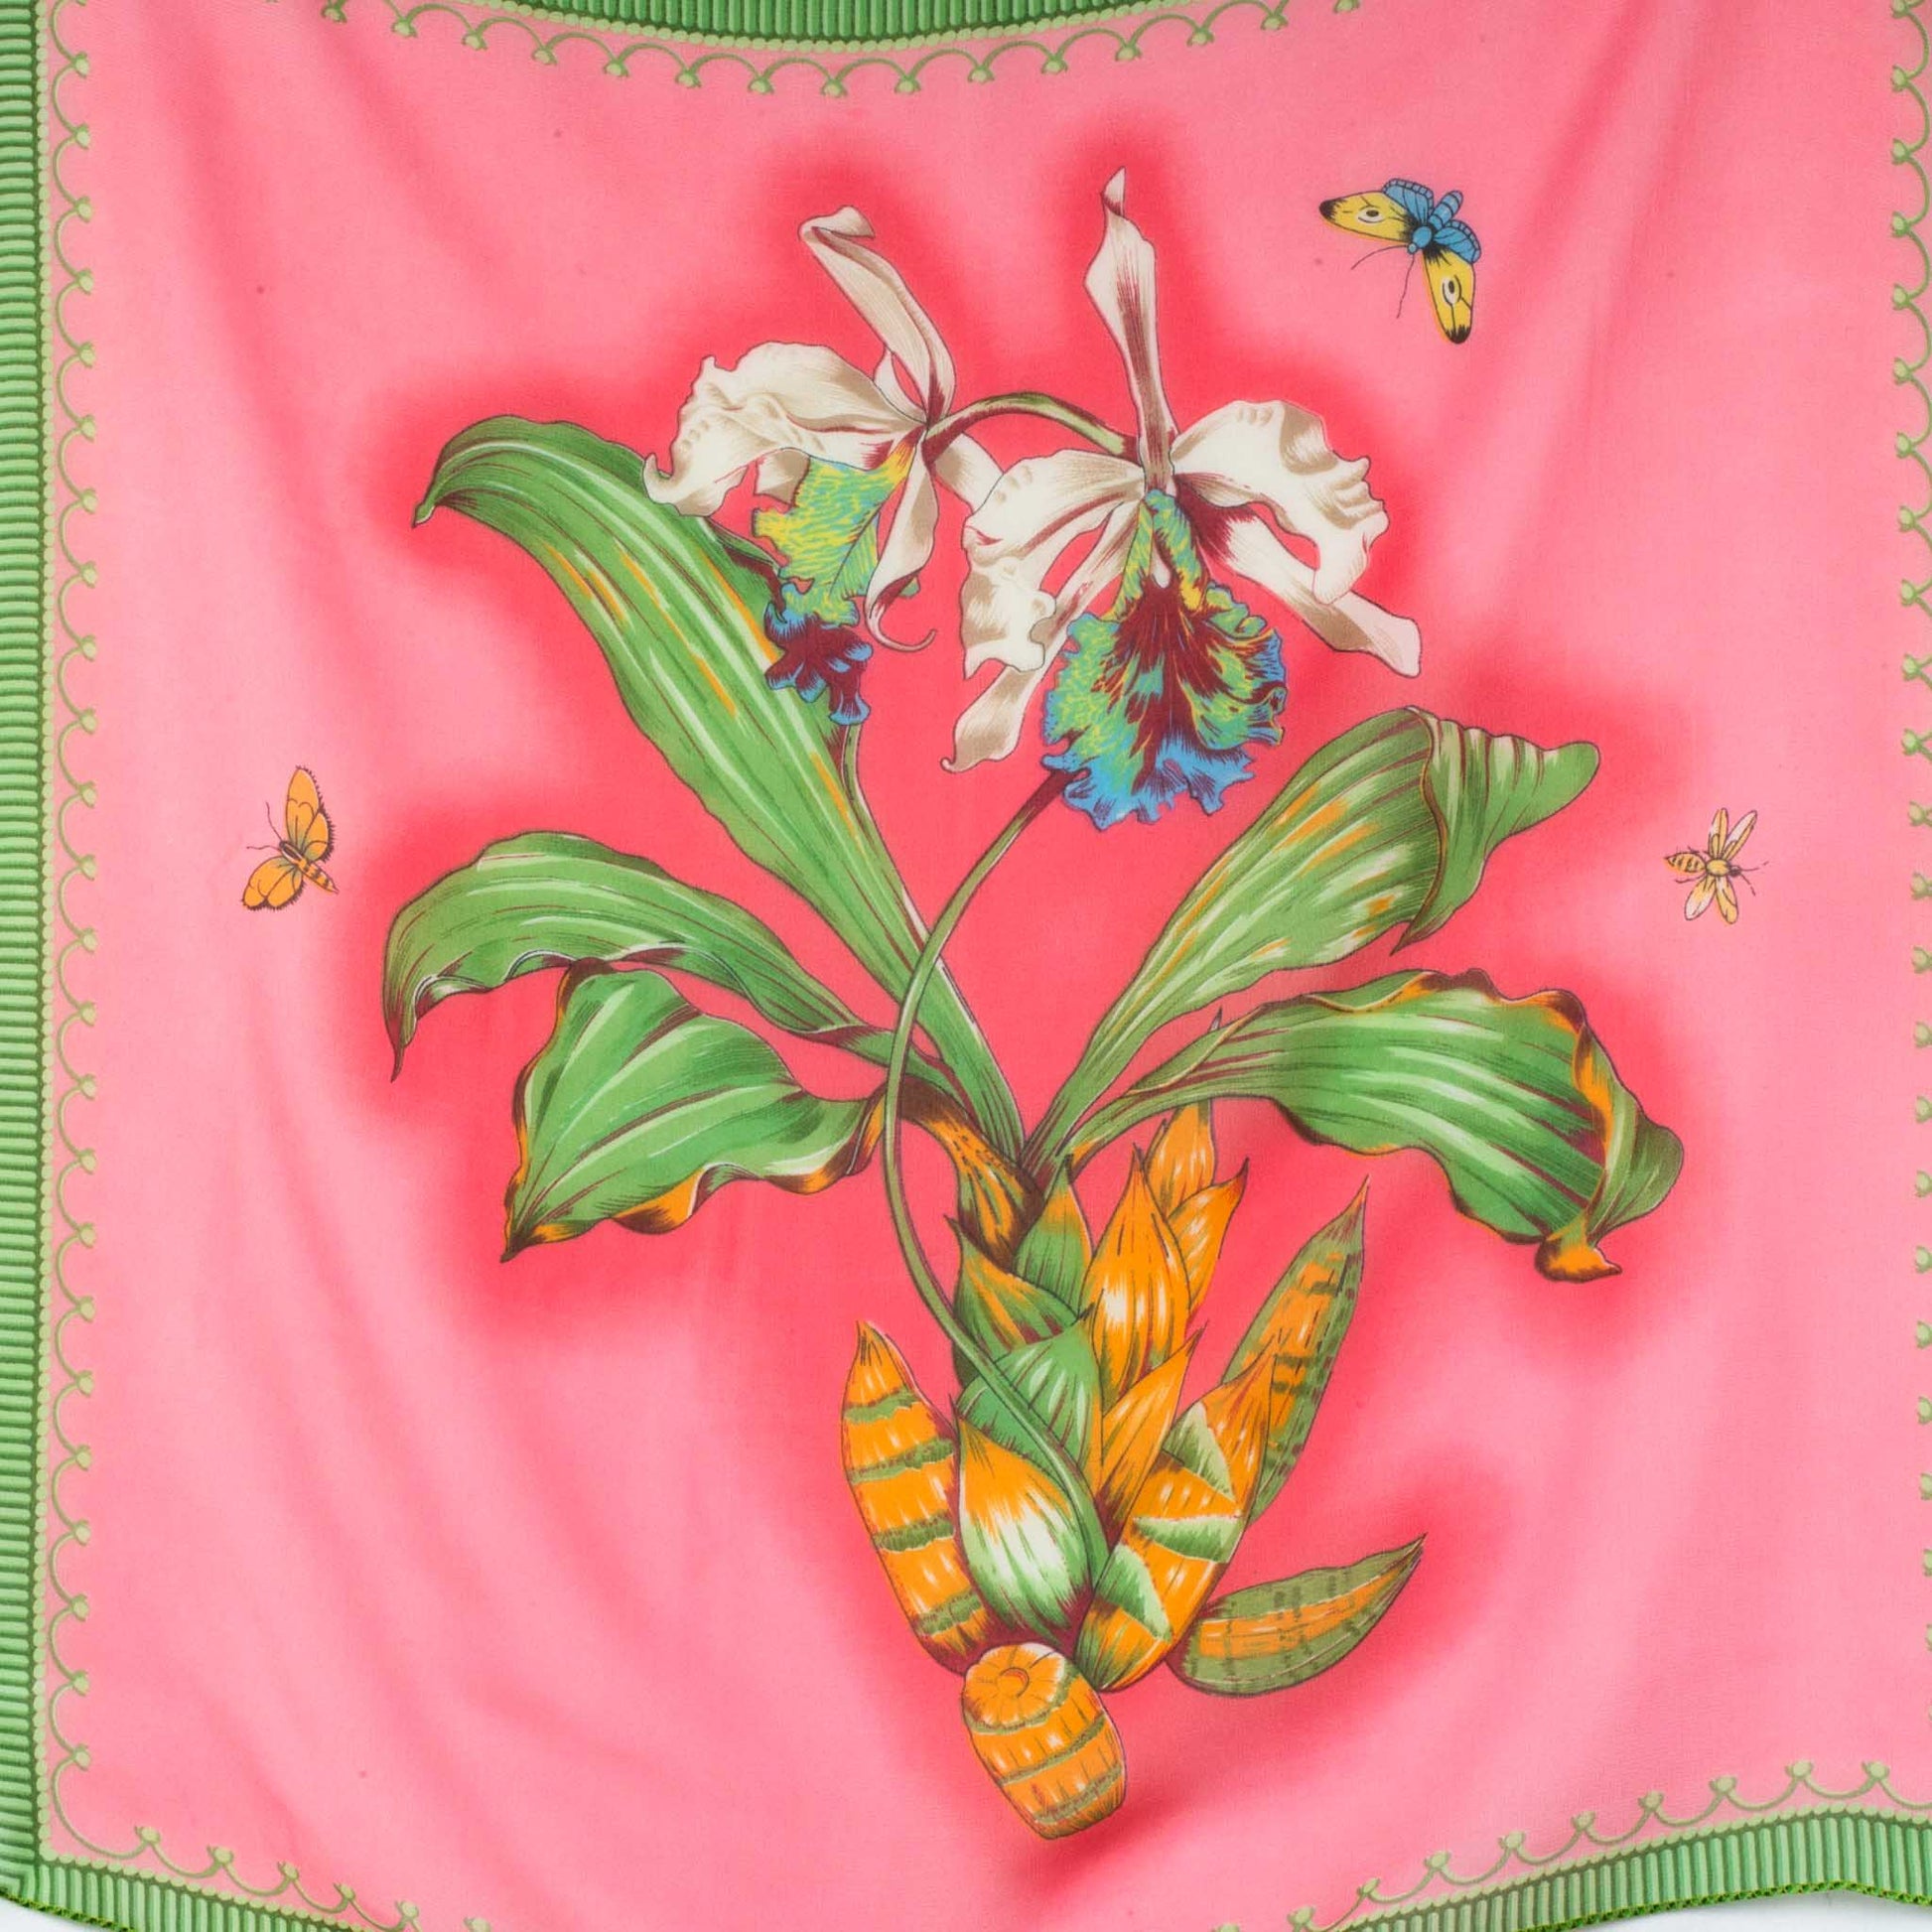 Eșarfă damă din mătase , imprimeu cu floare mare și fluturi, 65 x 65 cm - Roz